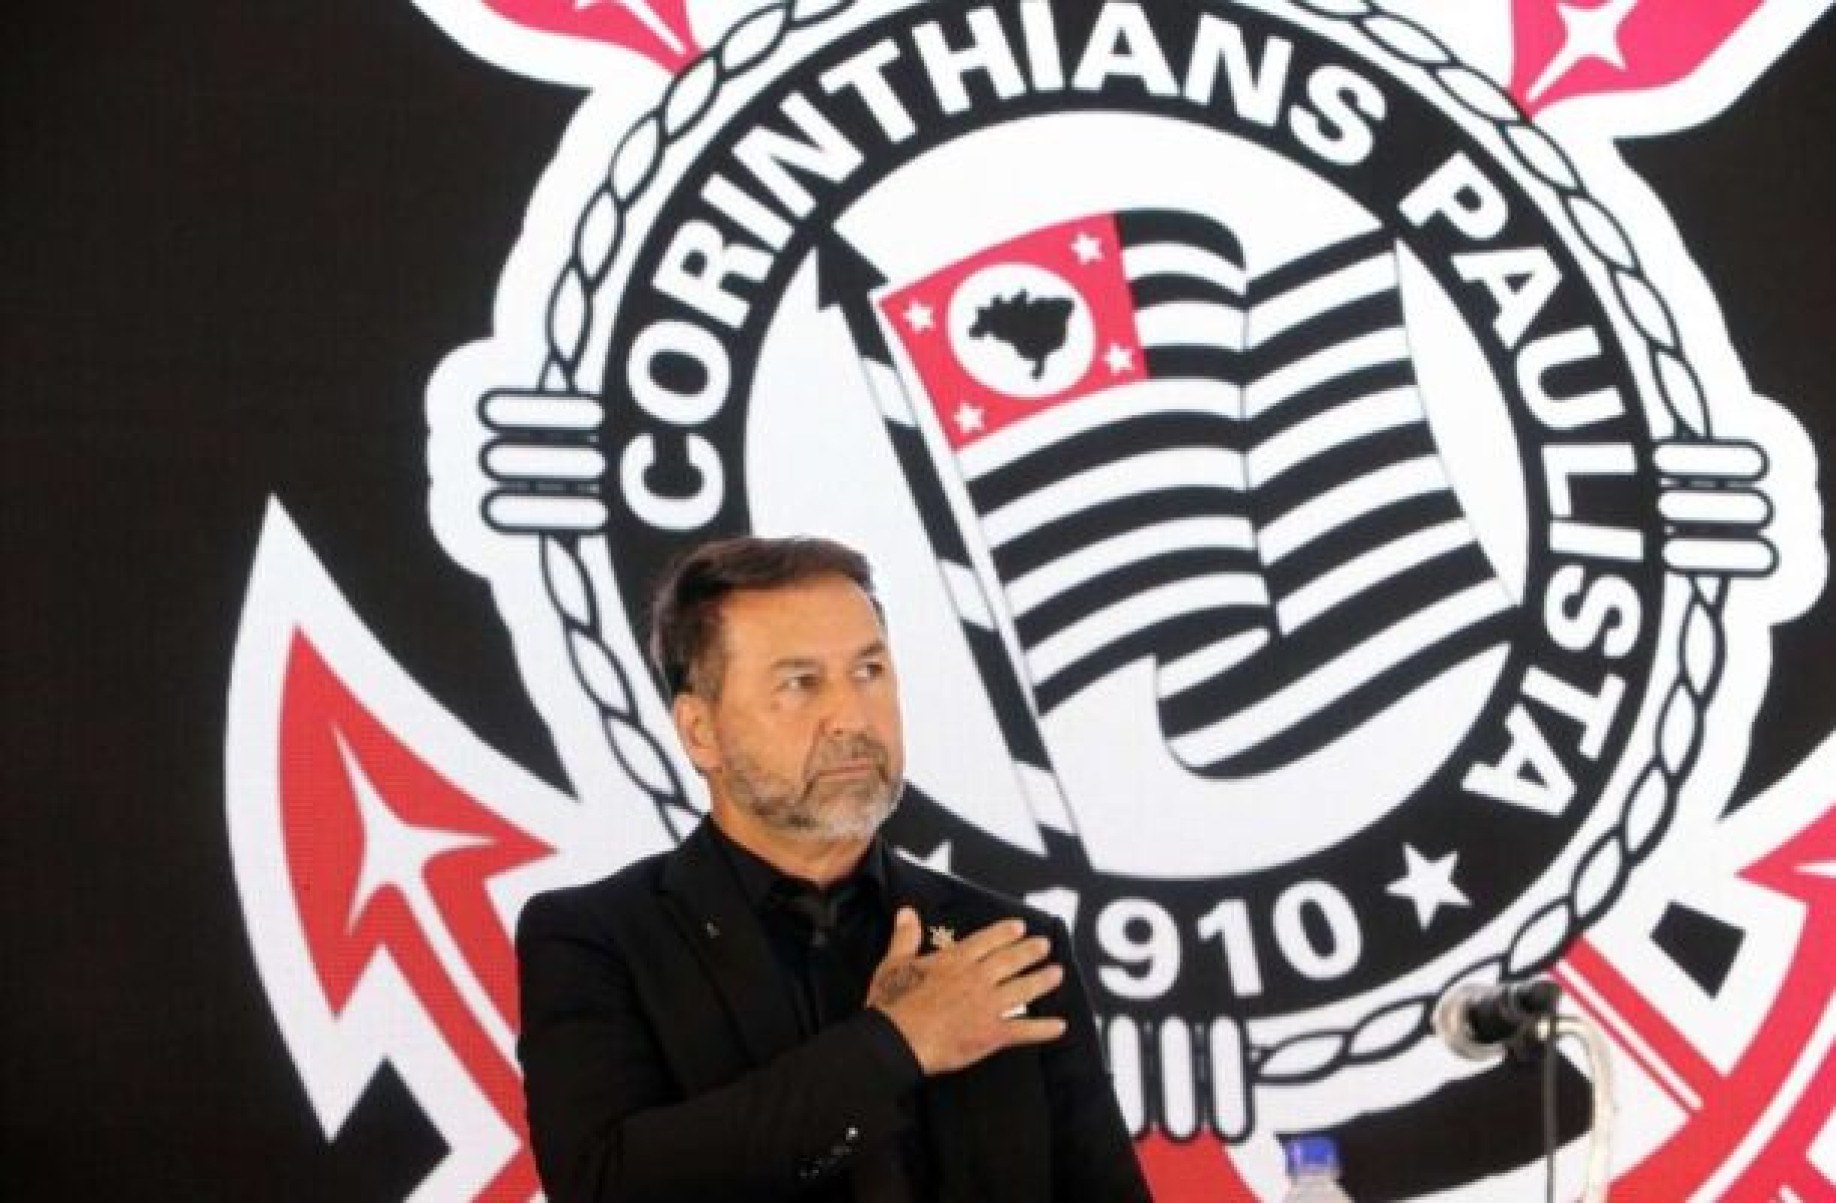 Corinthians oficializa acordo com a Liga Forte União até 2029